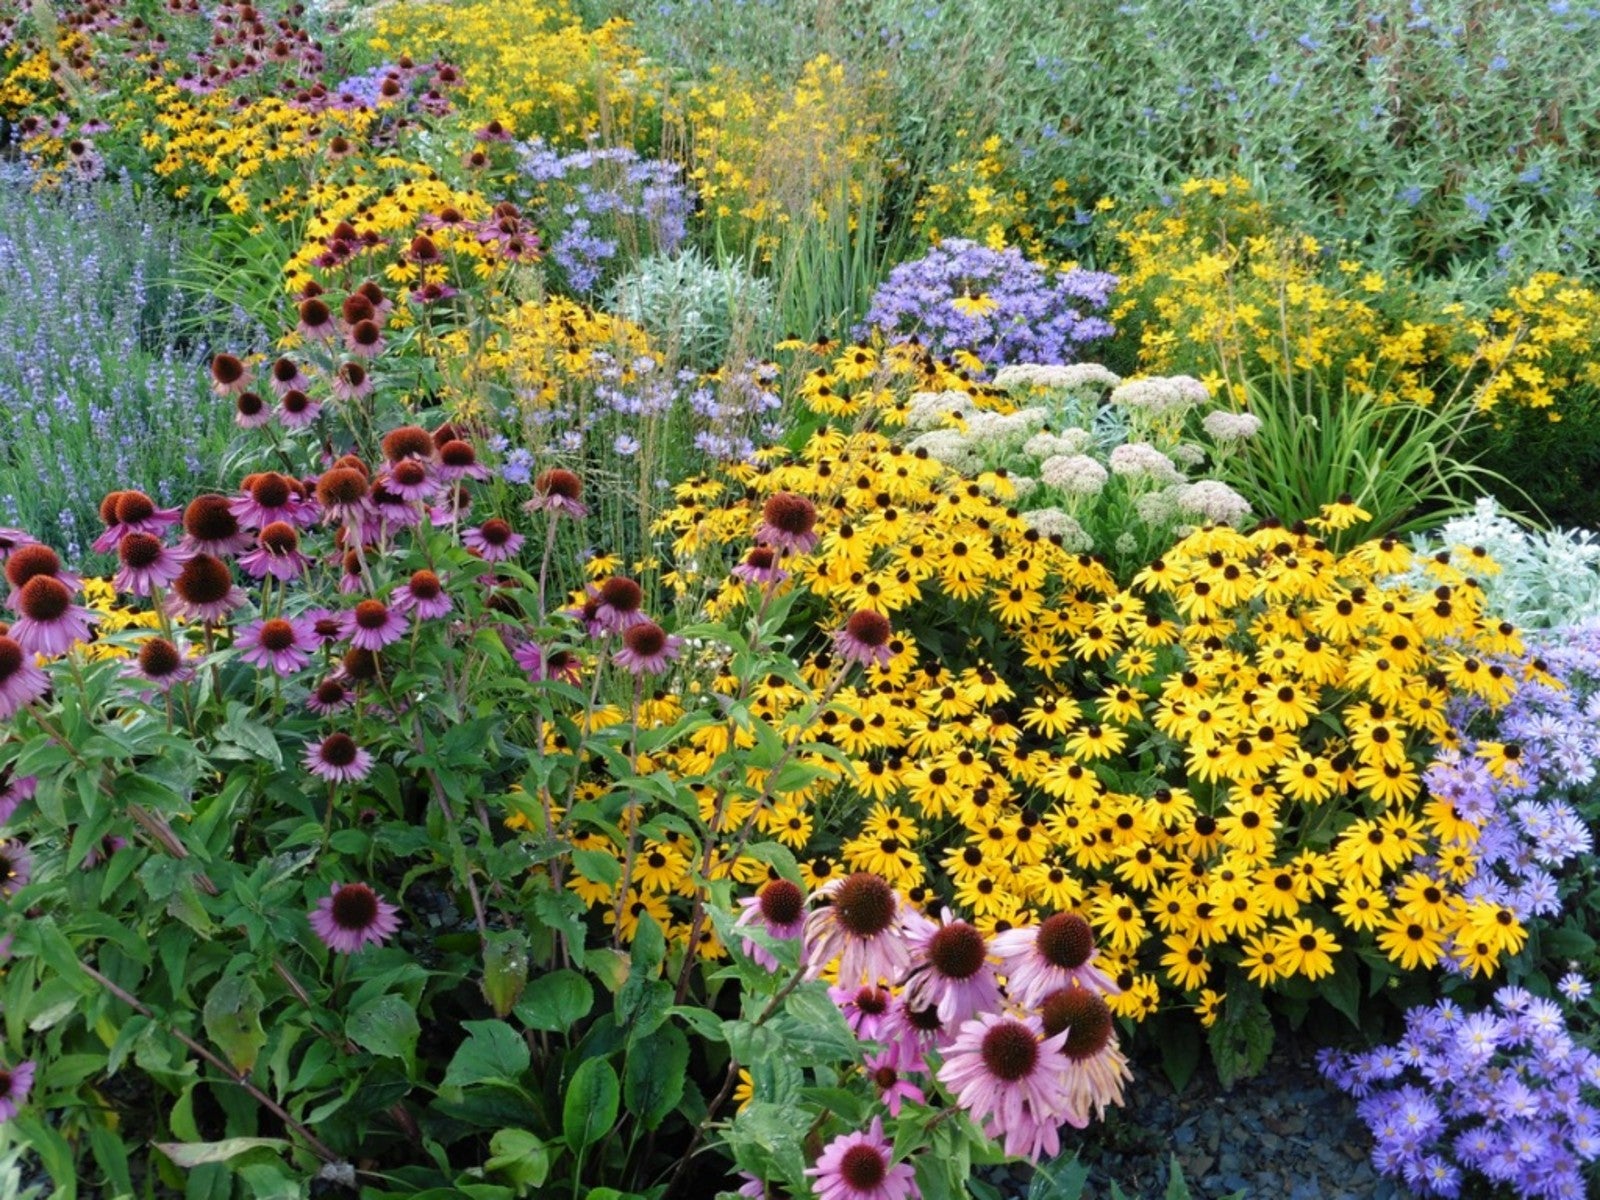 Perennial Garden Design Tips For, How To Make A Perennial Garden Design